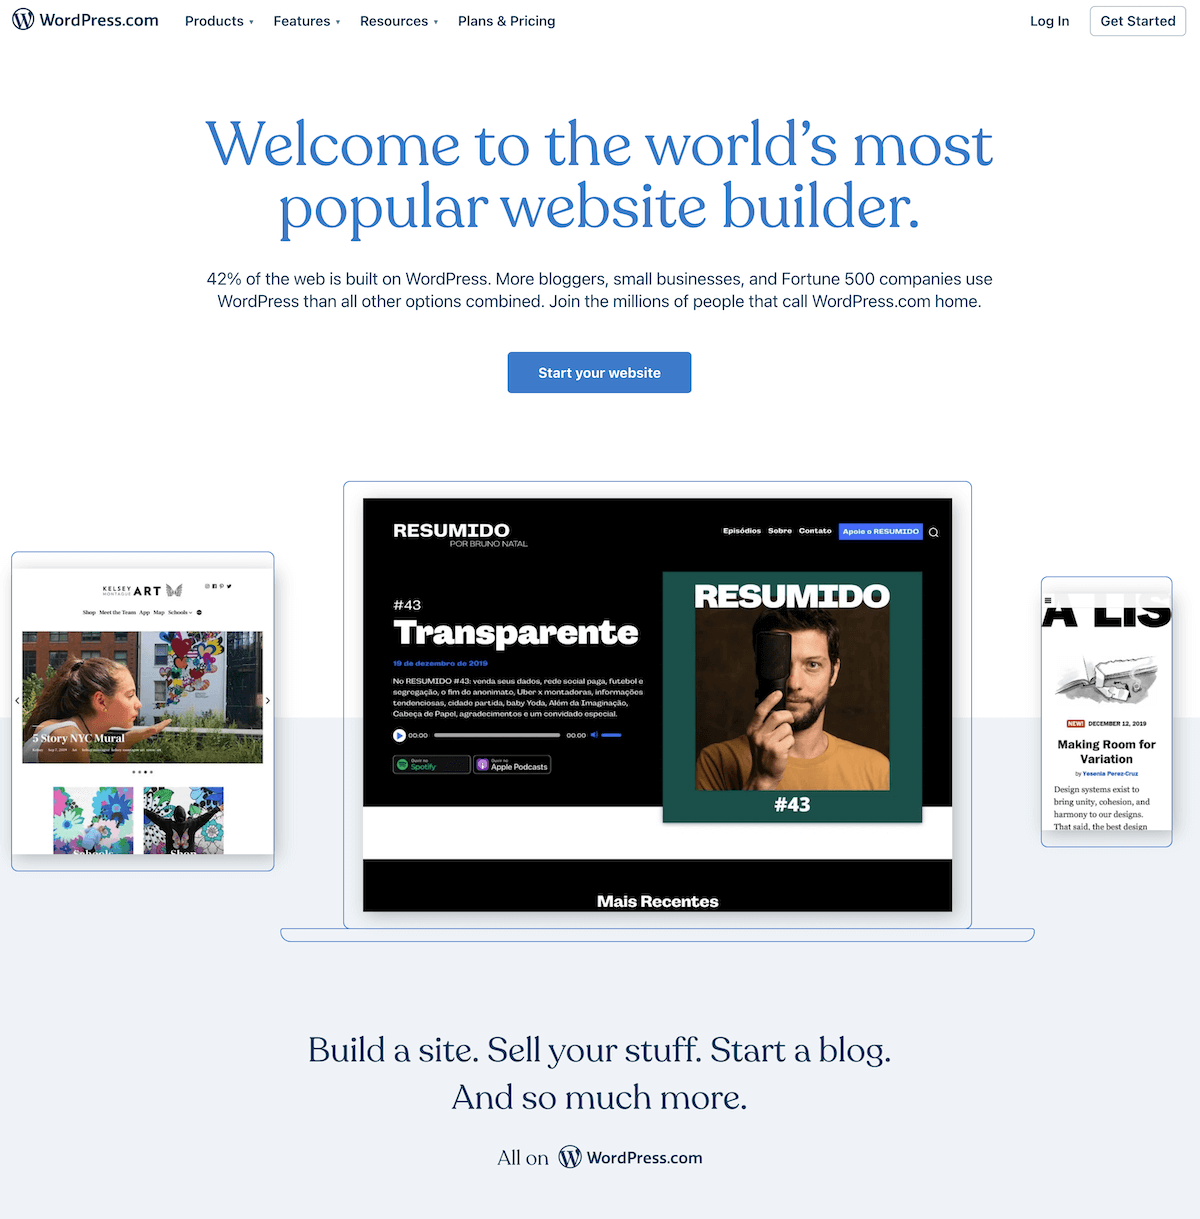 Sito web di WordPress.com